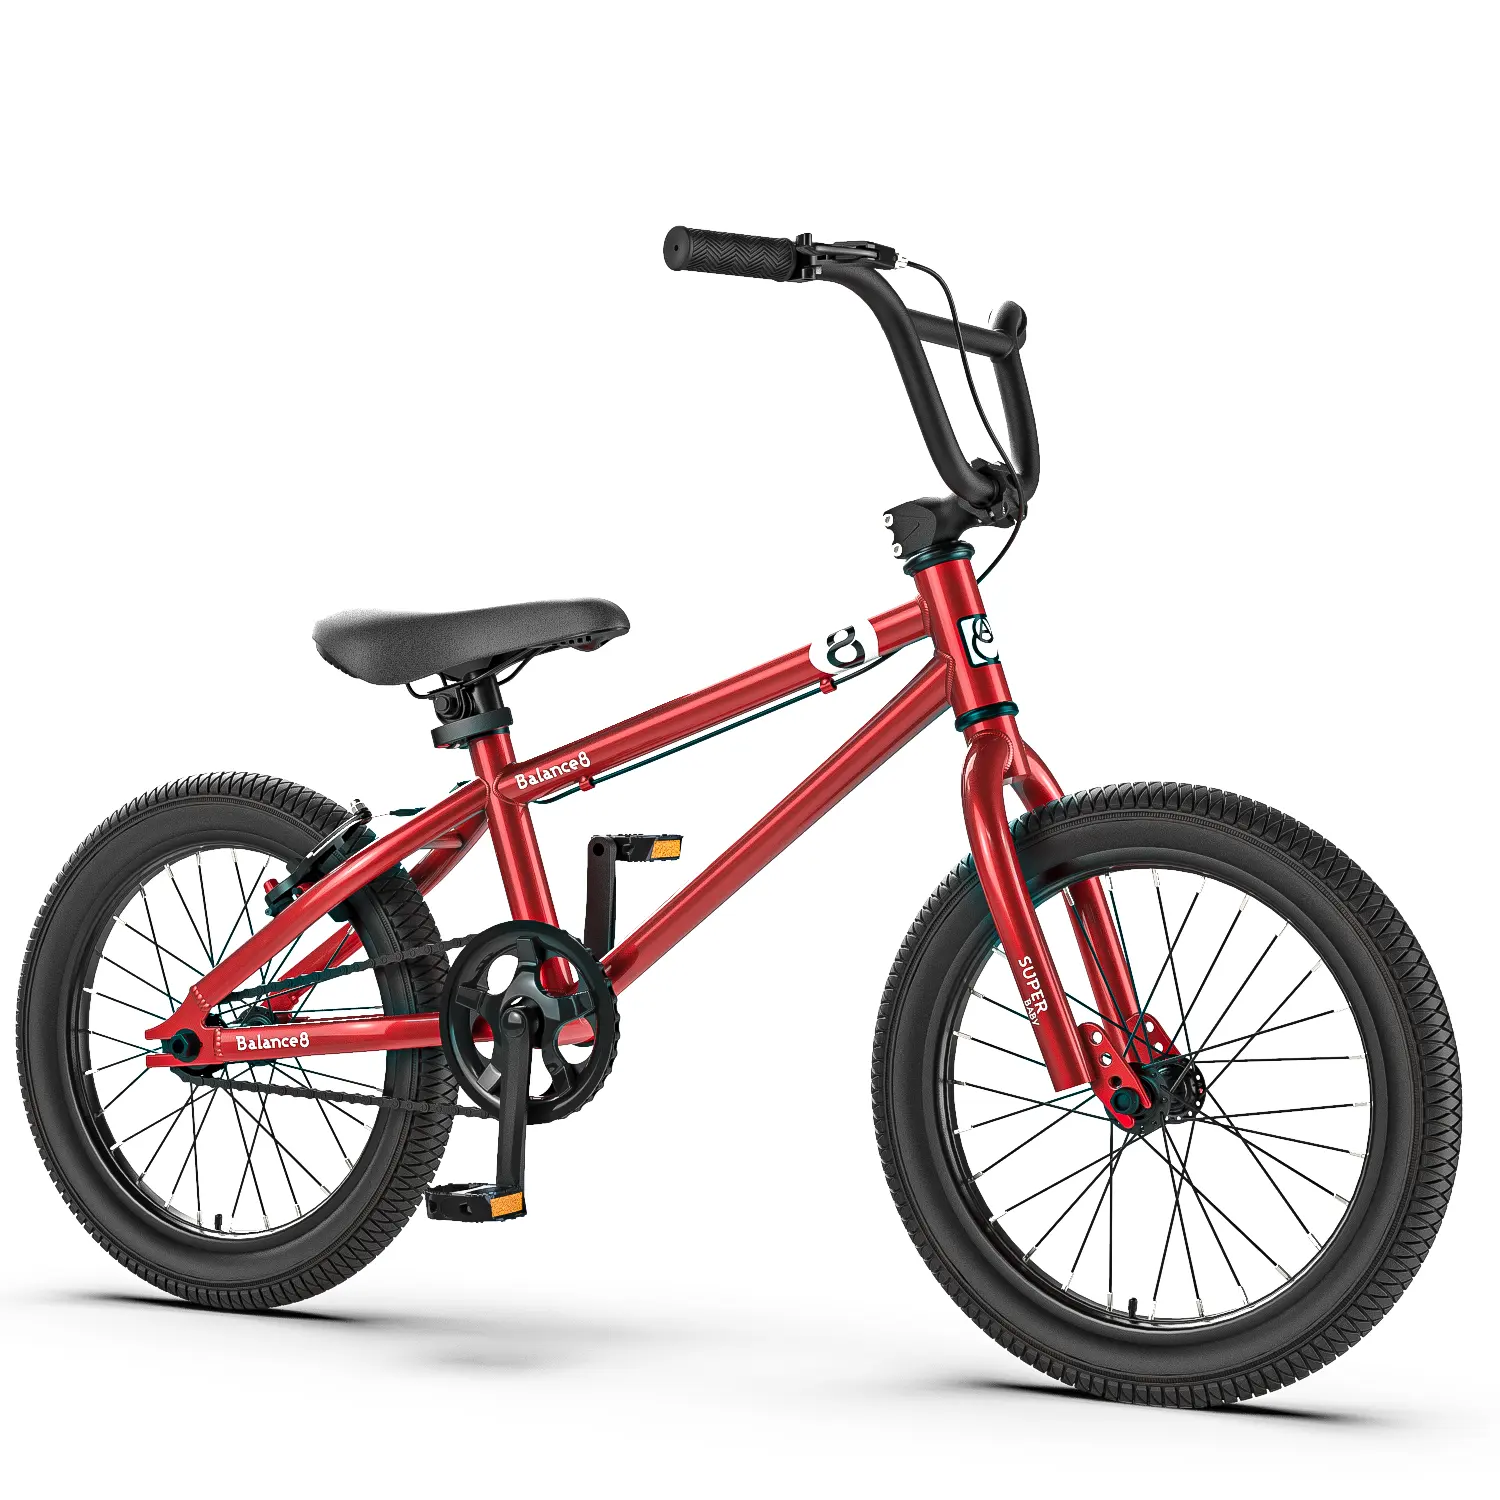 2022 جديد تصميم دراجة أطفال 16/18/20 بوصة bmx الدراجات للأطفال نوعية جيدة مع مكبح قرصي الكربون الصلب رخيصة دراجة جبلية